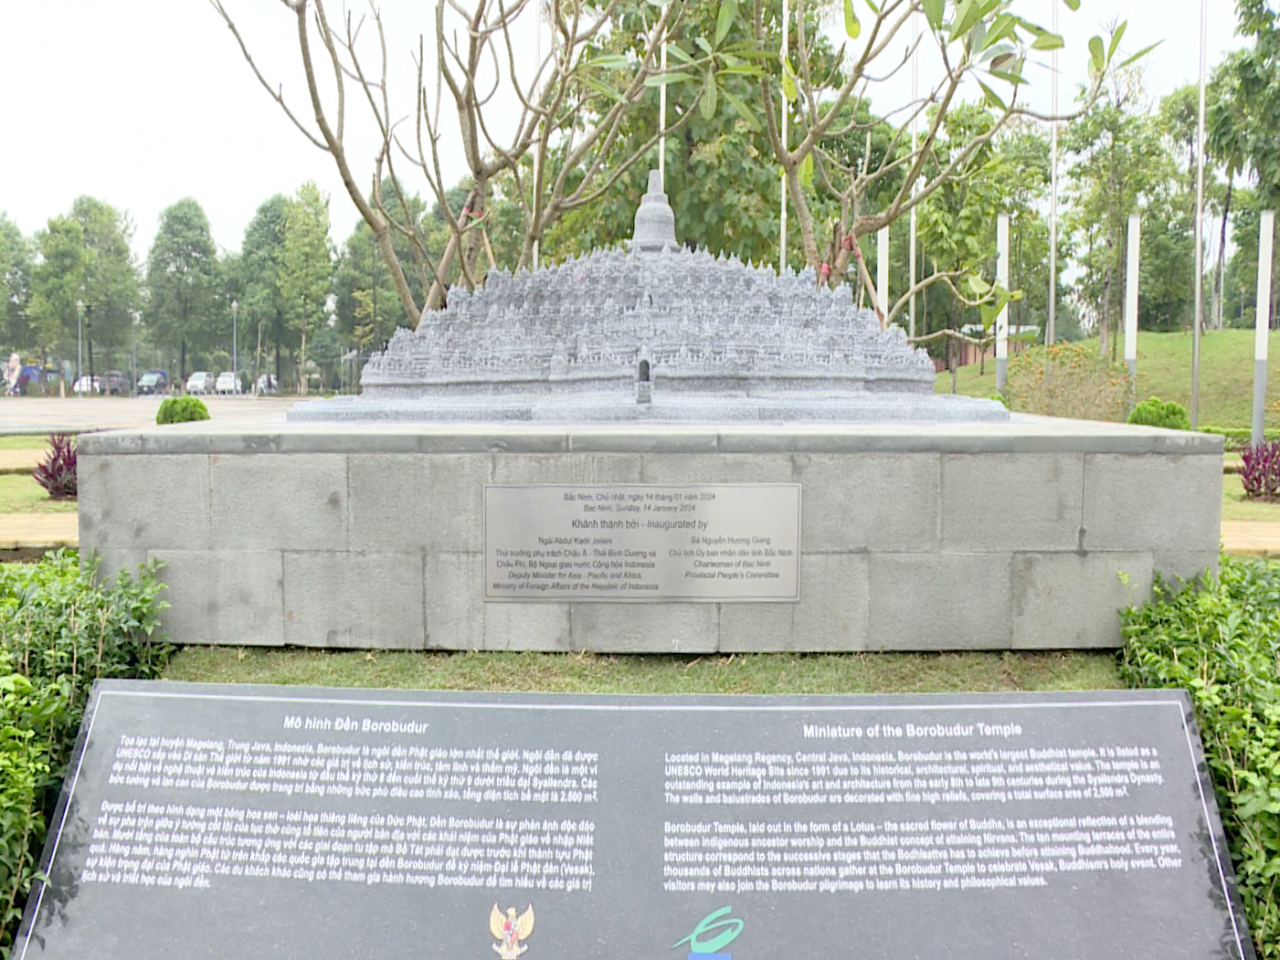 Mô hình thu nhỏ Đền Borobudur. (Ảnh: Bắc Ninh TV)